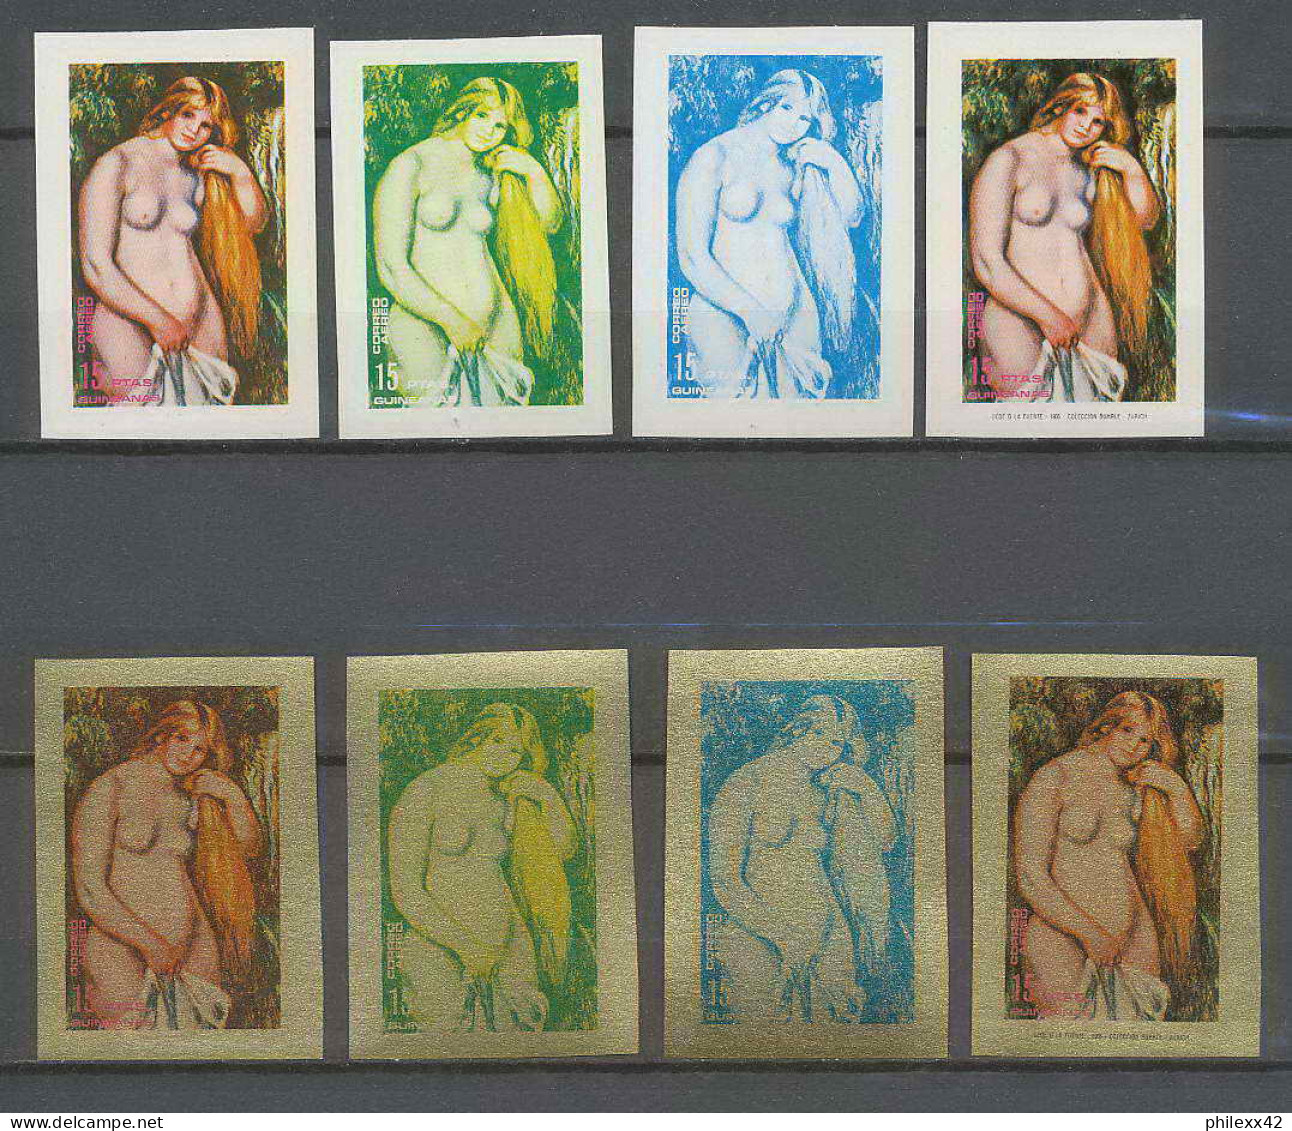 Guinée équatoriale Guinea 239 N°213 Renoir Essai Proof Non Dentelé Imperf Orate Tableau Painting Nus Nudes MNH ** - Nudes